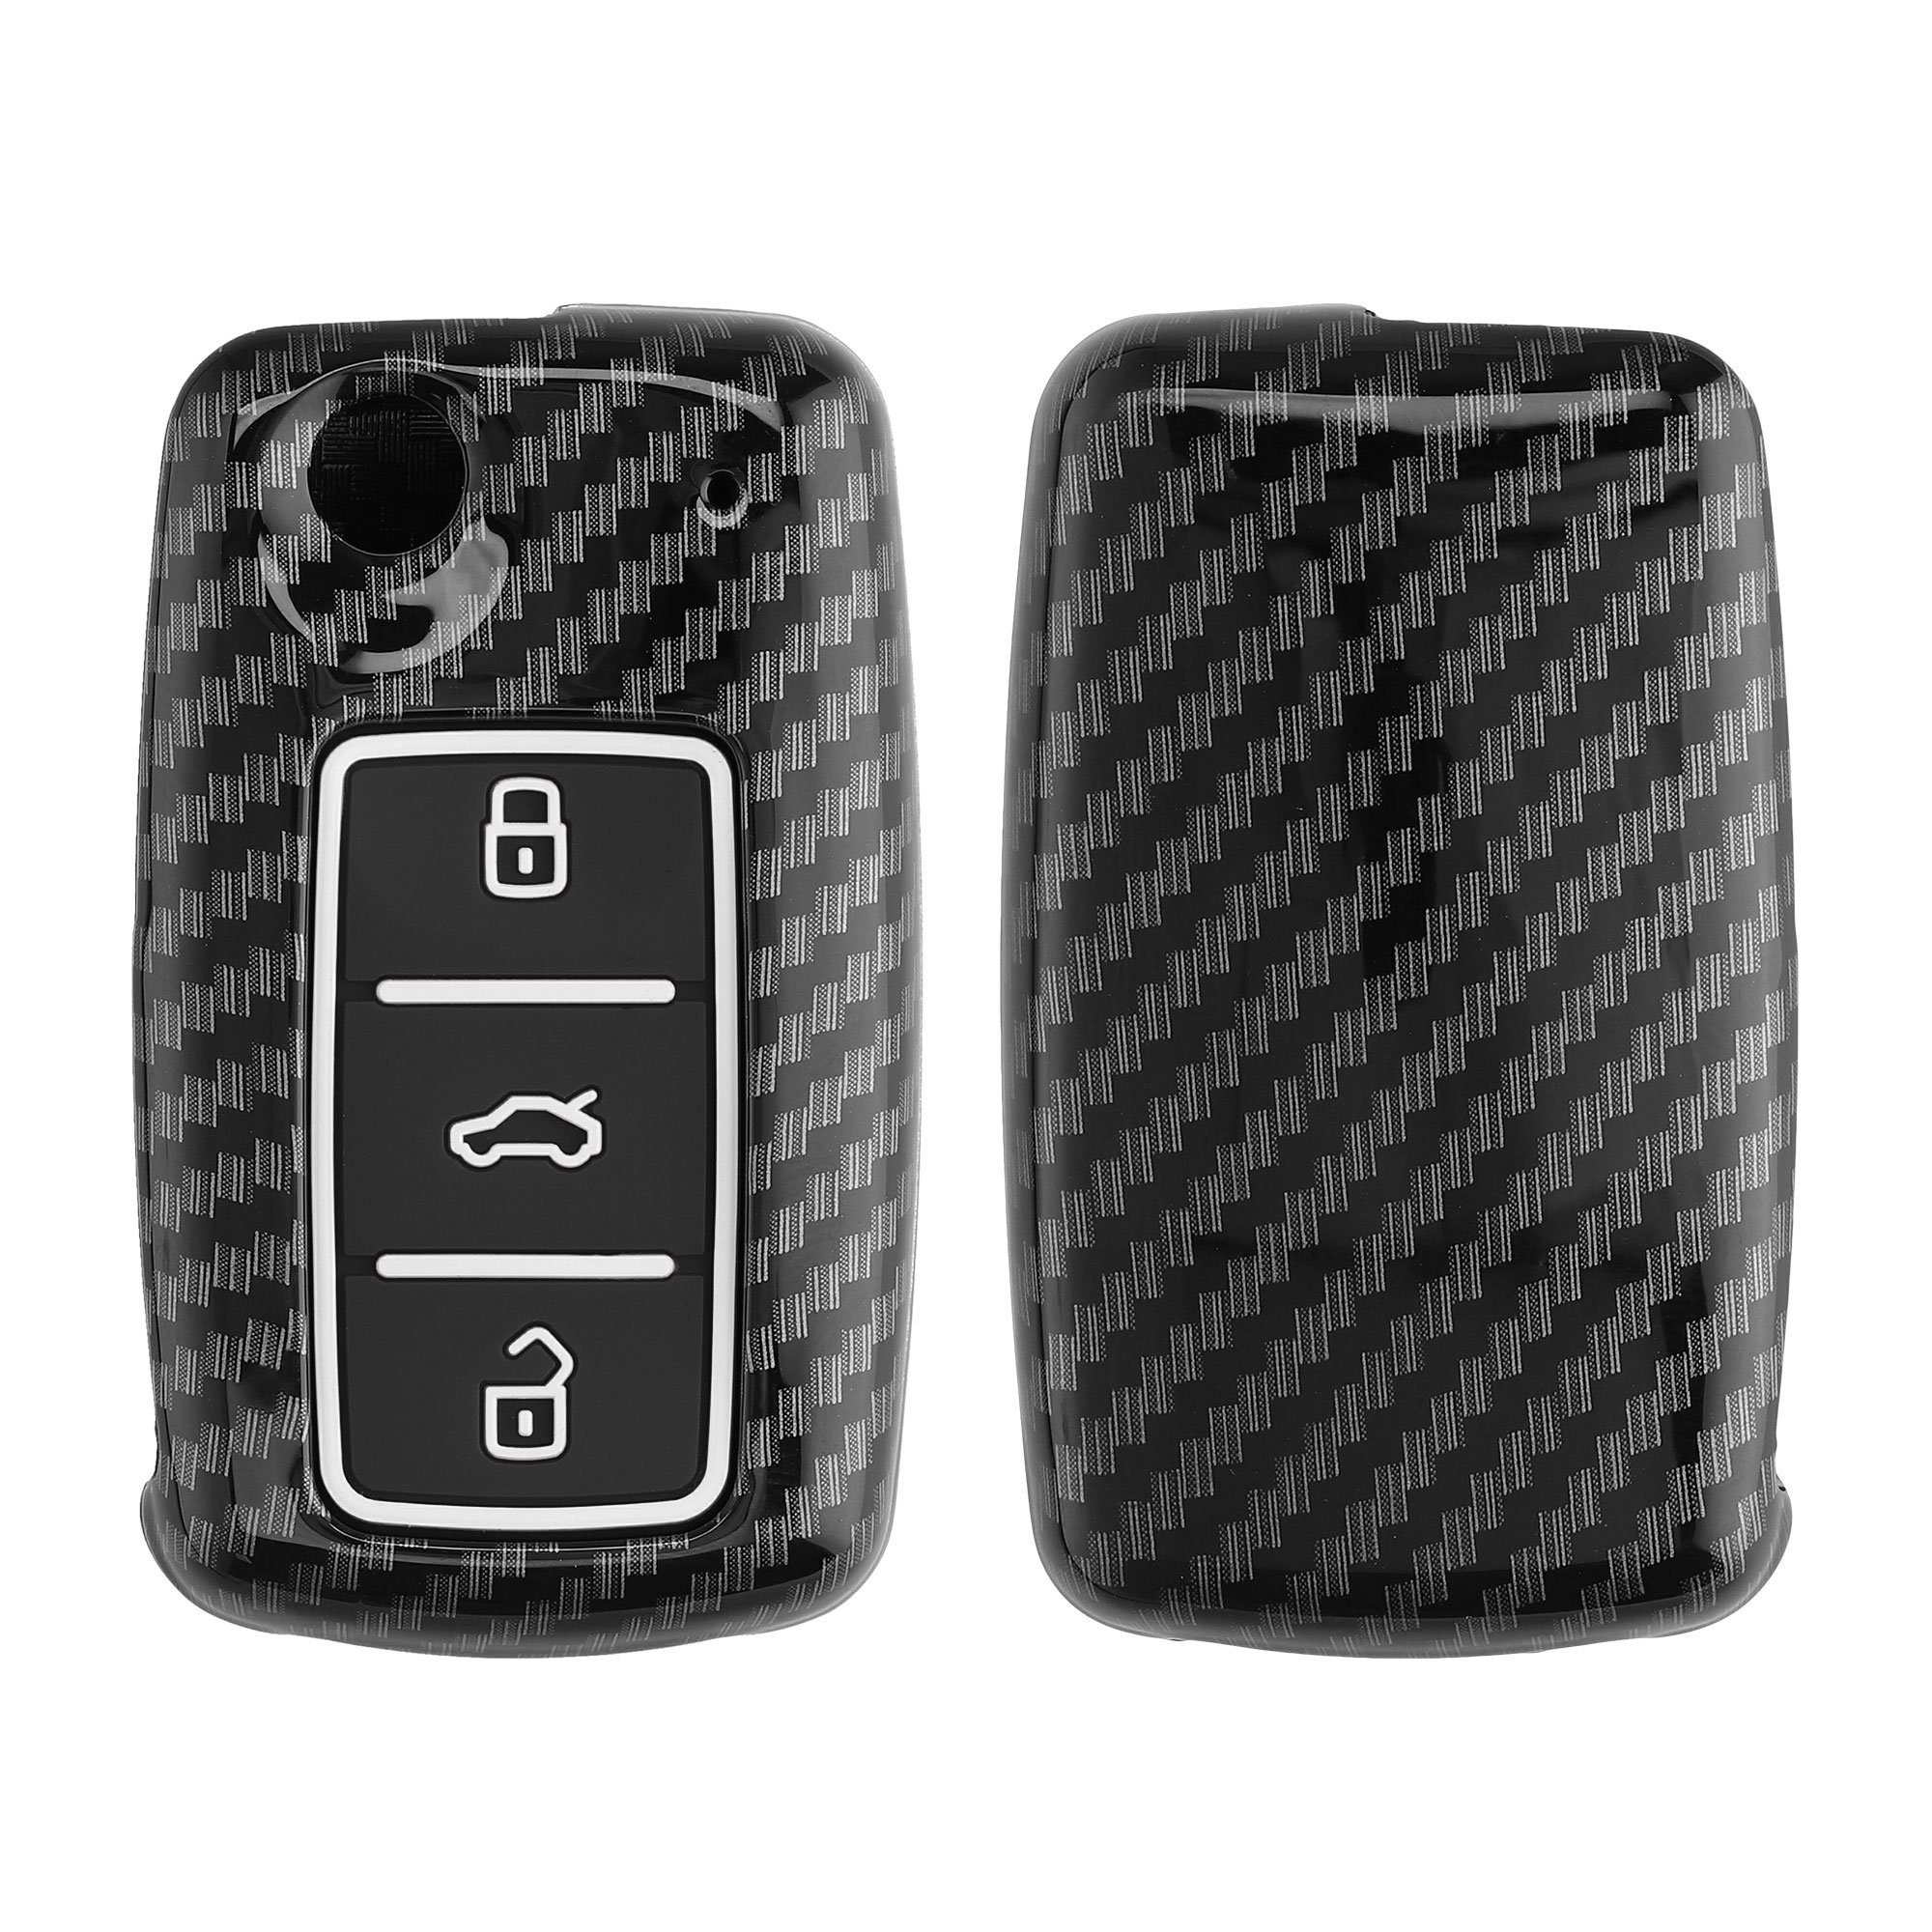 Echt Carbon Auto Schlüssel Cover für VW Seat Skoda schwarz, 49,90 €